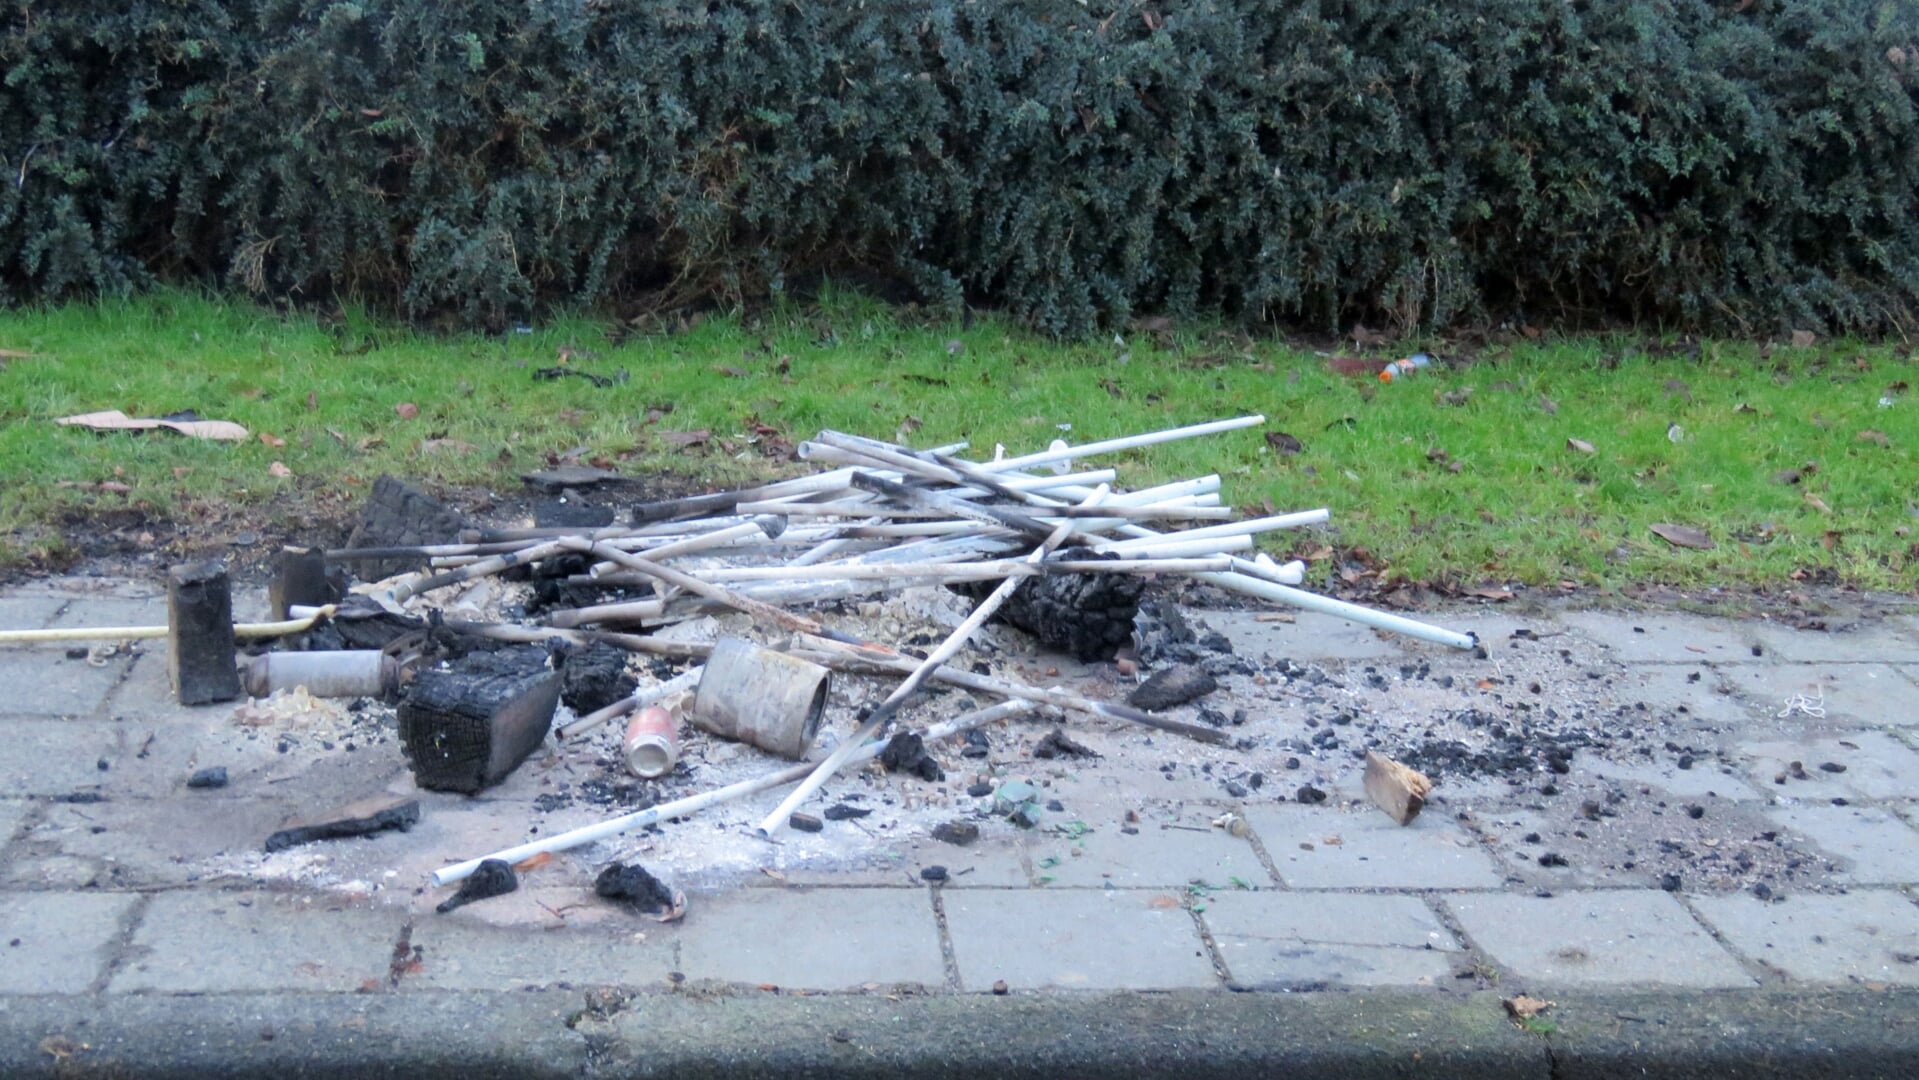 Op Nieuwjaarsmorgen waren hier en daar nog wat resten van brandjes te zien.